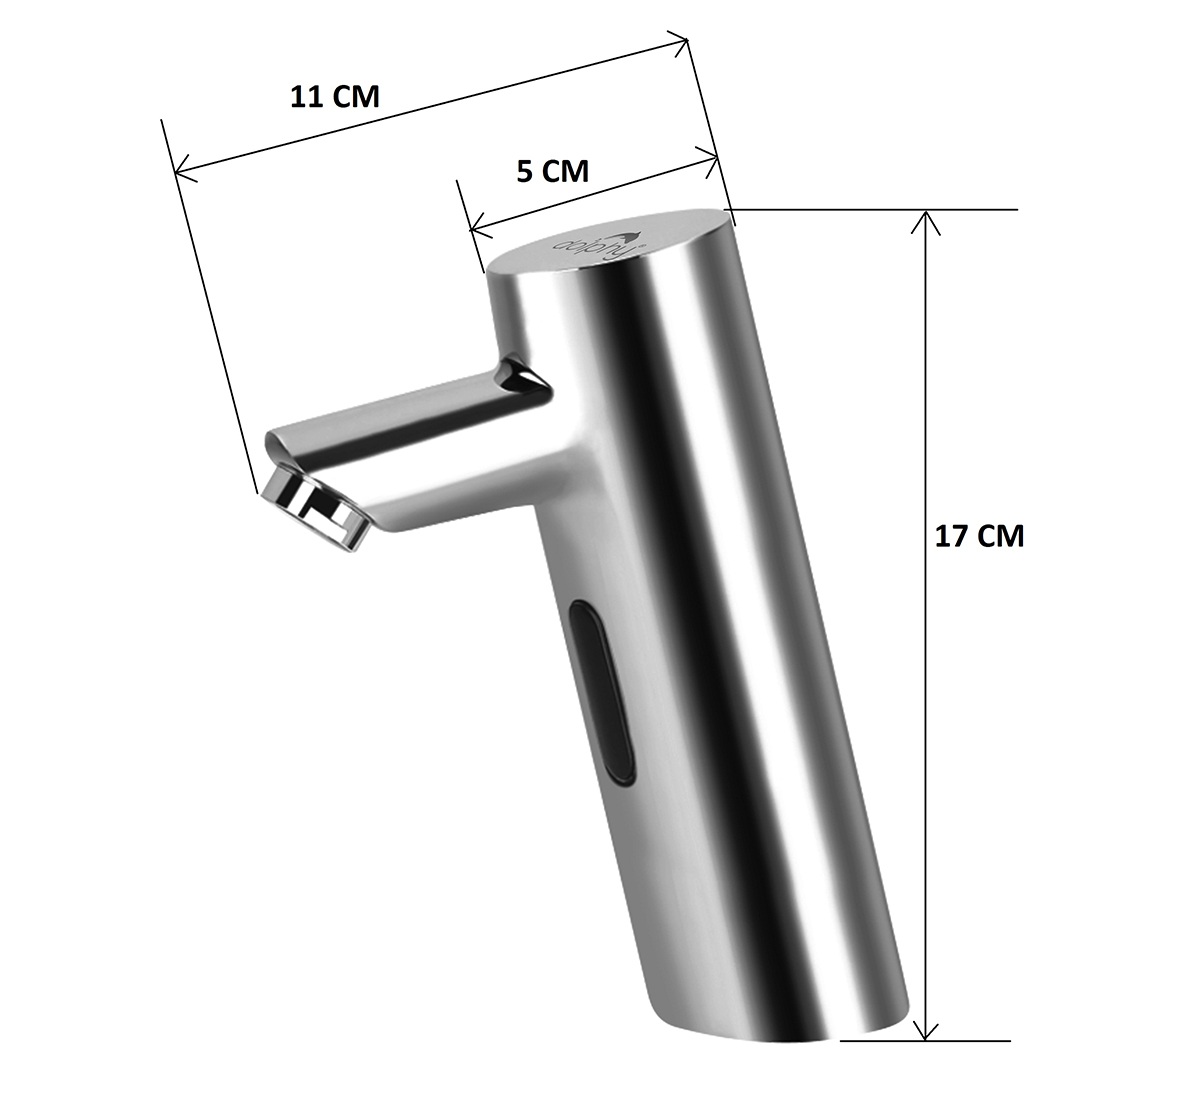 Silver cylinder sensor tap basin mount